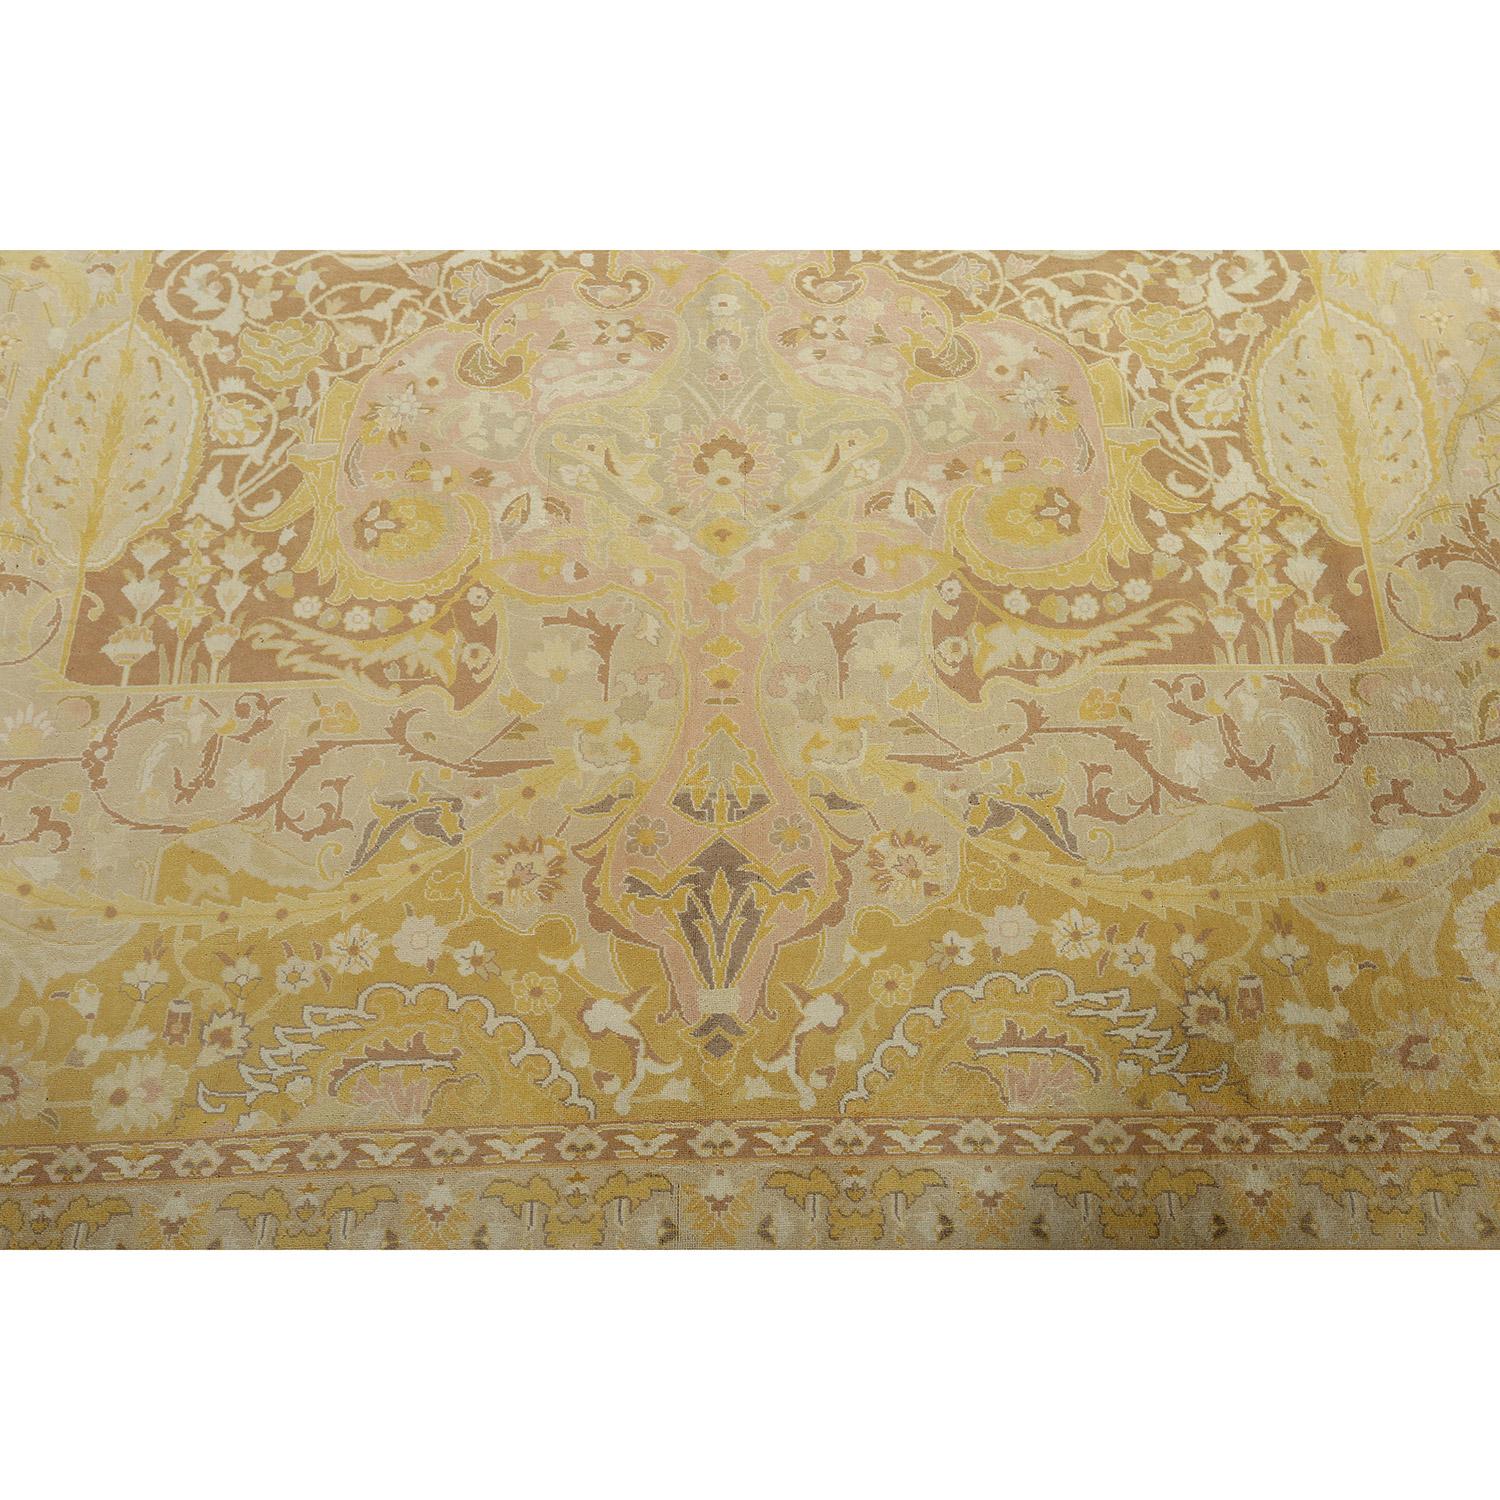 Ce tapis vintage de Tabriz, réalisé par le célèbre tisserand Javan Amir Khiz, est un véritable témoignage de la maîtrise de la fabrication des tapis persans. Chaque nœud et chaque détail complexe reflètent l'habileté et l'art exceptionnels qui font